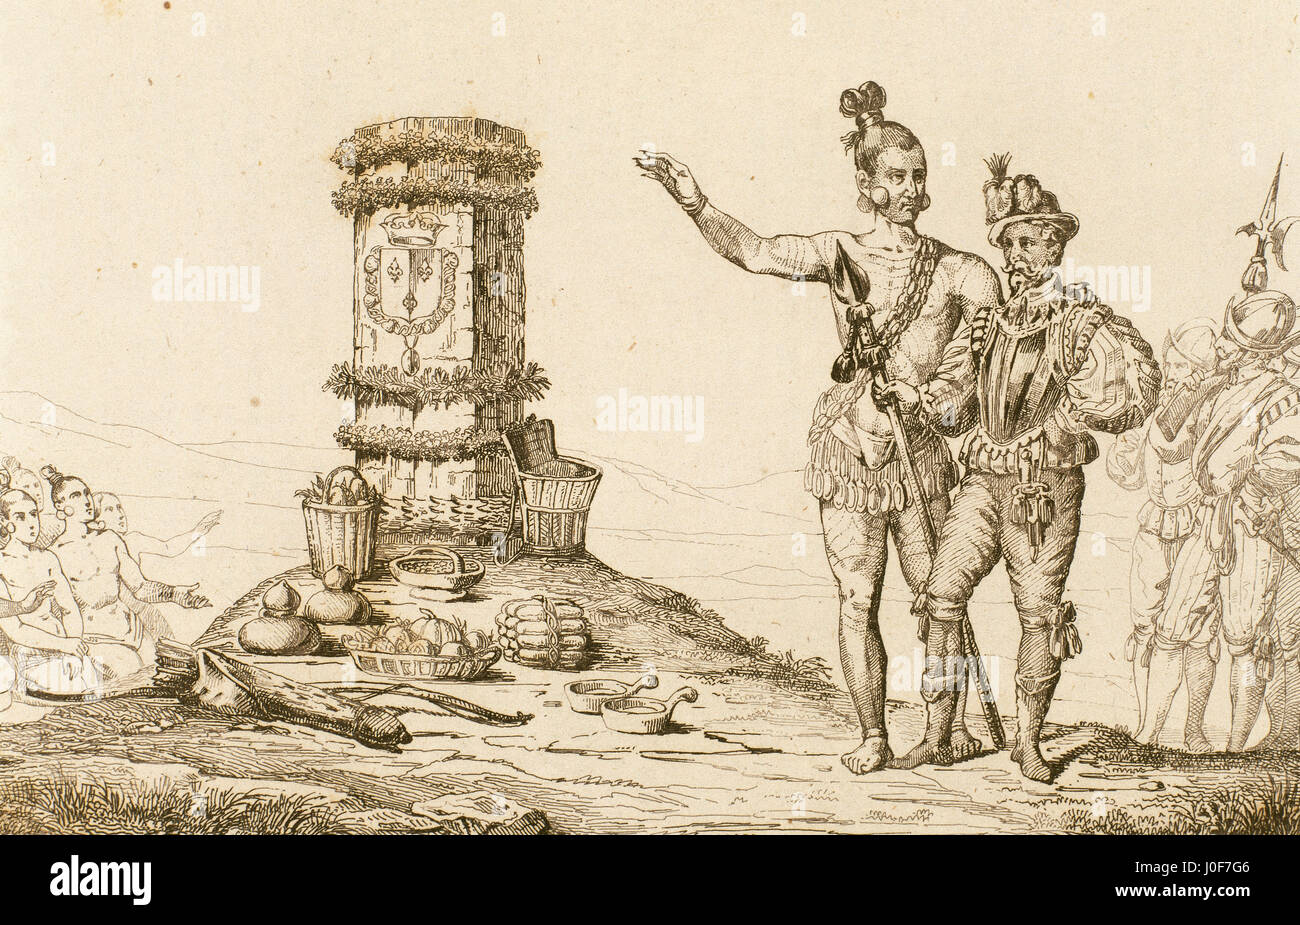 L'explorateur français René Goulaine de Laudonniere (1529-1574) et le chef indien Athore visiter le Jean Ribault (1520-1565) colonne, érigée en 1568 dans le Nord de la Floride. Gravure, 1841. Banque D'Images